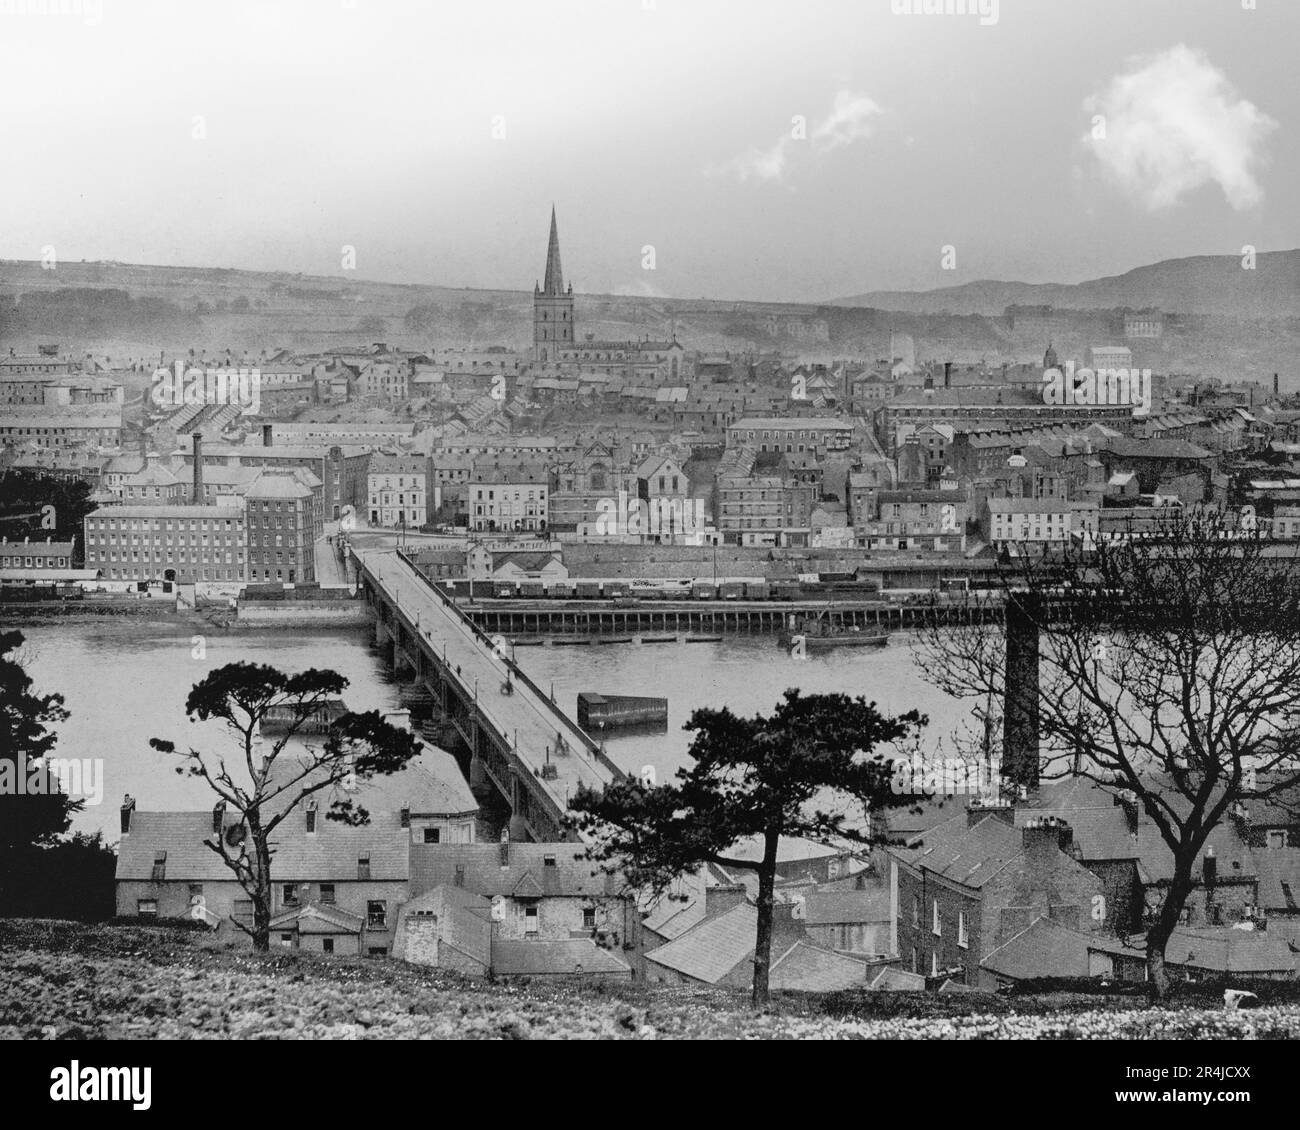 Una vista di fine 19th ° secolo del Ponte Craigavon sul fiume Foyle eretto nel 1863, un po 'più a monte per sostituire un precedente ponte di legno. Derry City, nota anche come Londonderry City, la seconda città più grande dell'Irlanda del Nord. La vecchia città murata si trova sulla riva occidentale (lontana) del fiume Foyle. Foto Stock